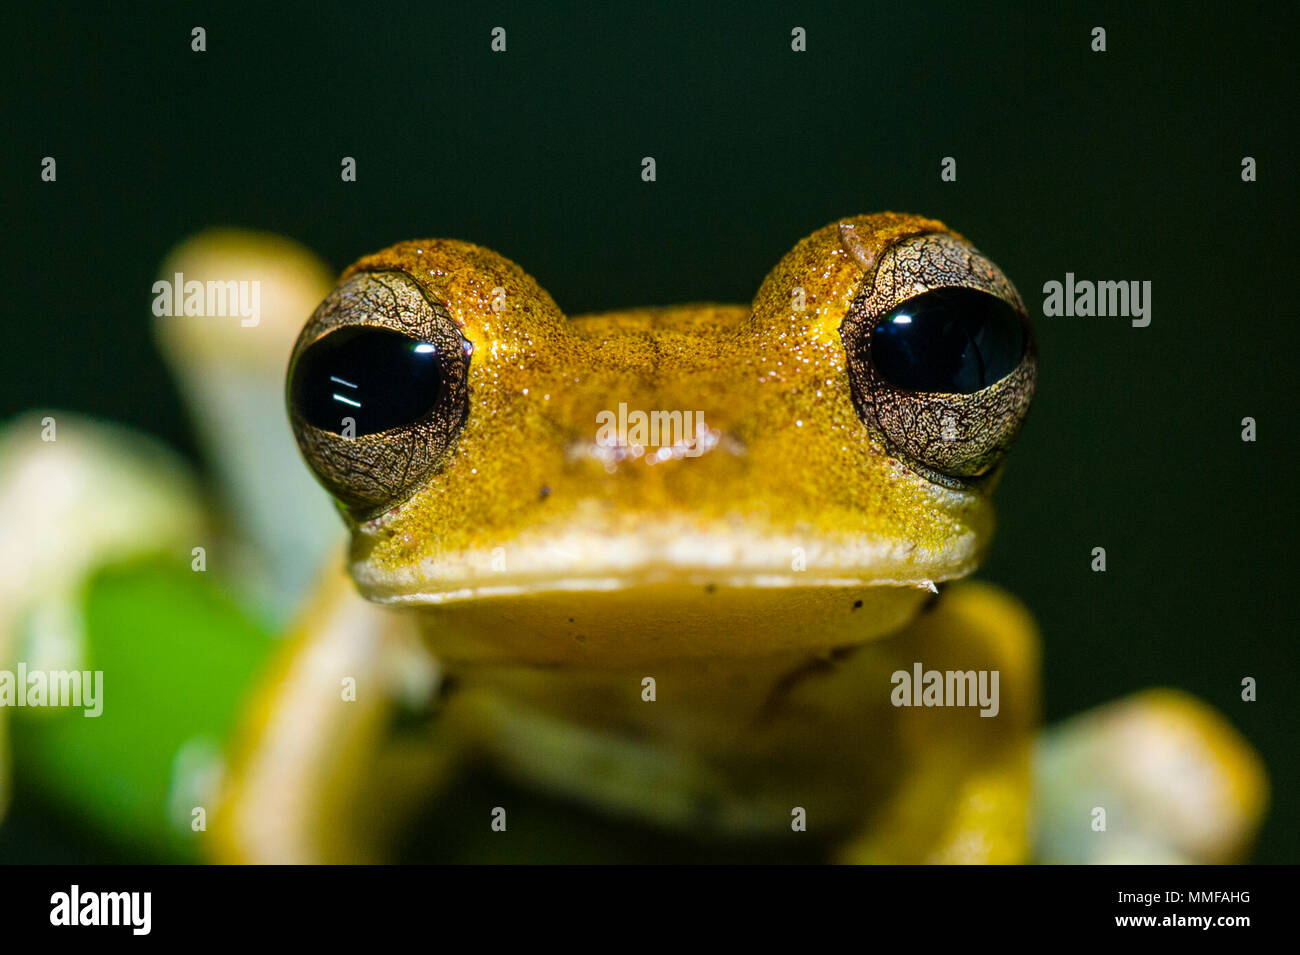 Yeux exorbités et peau jaune dans un closeup portrait of a Gunter's bagué grenouille d'arbre. Banque D'Images